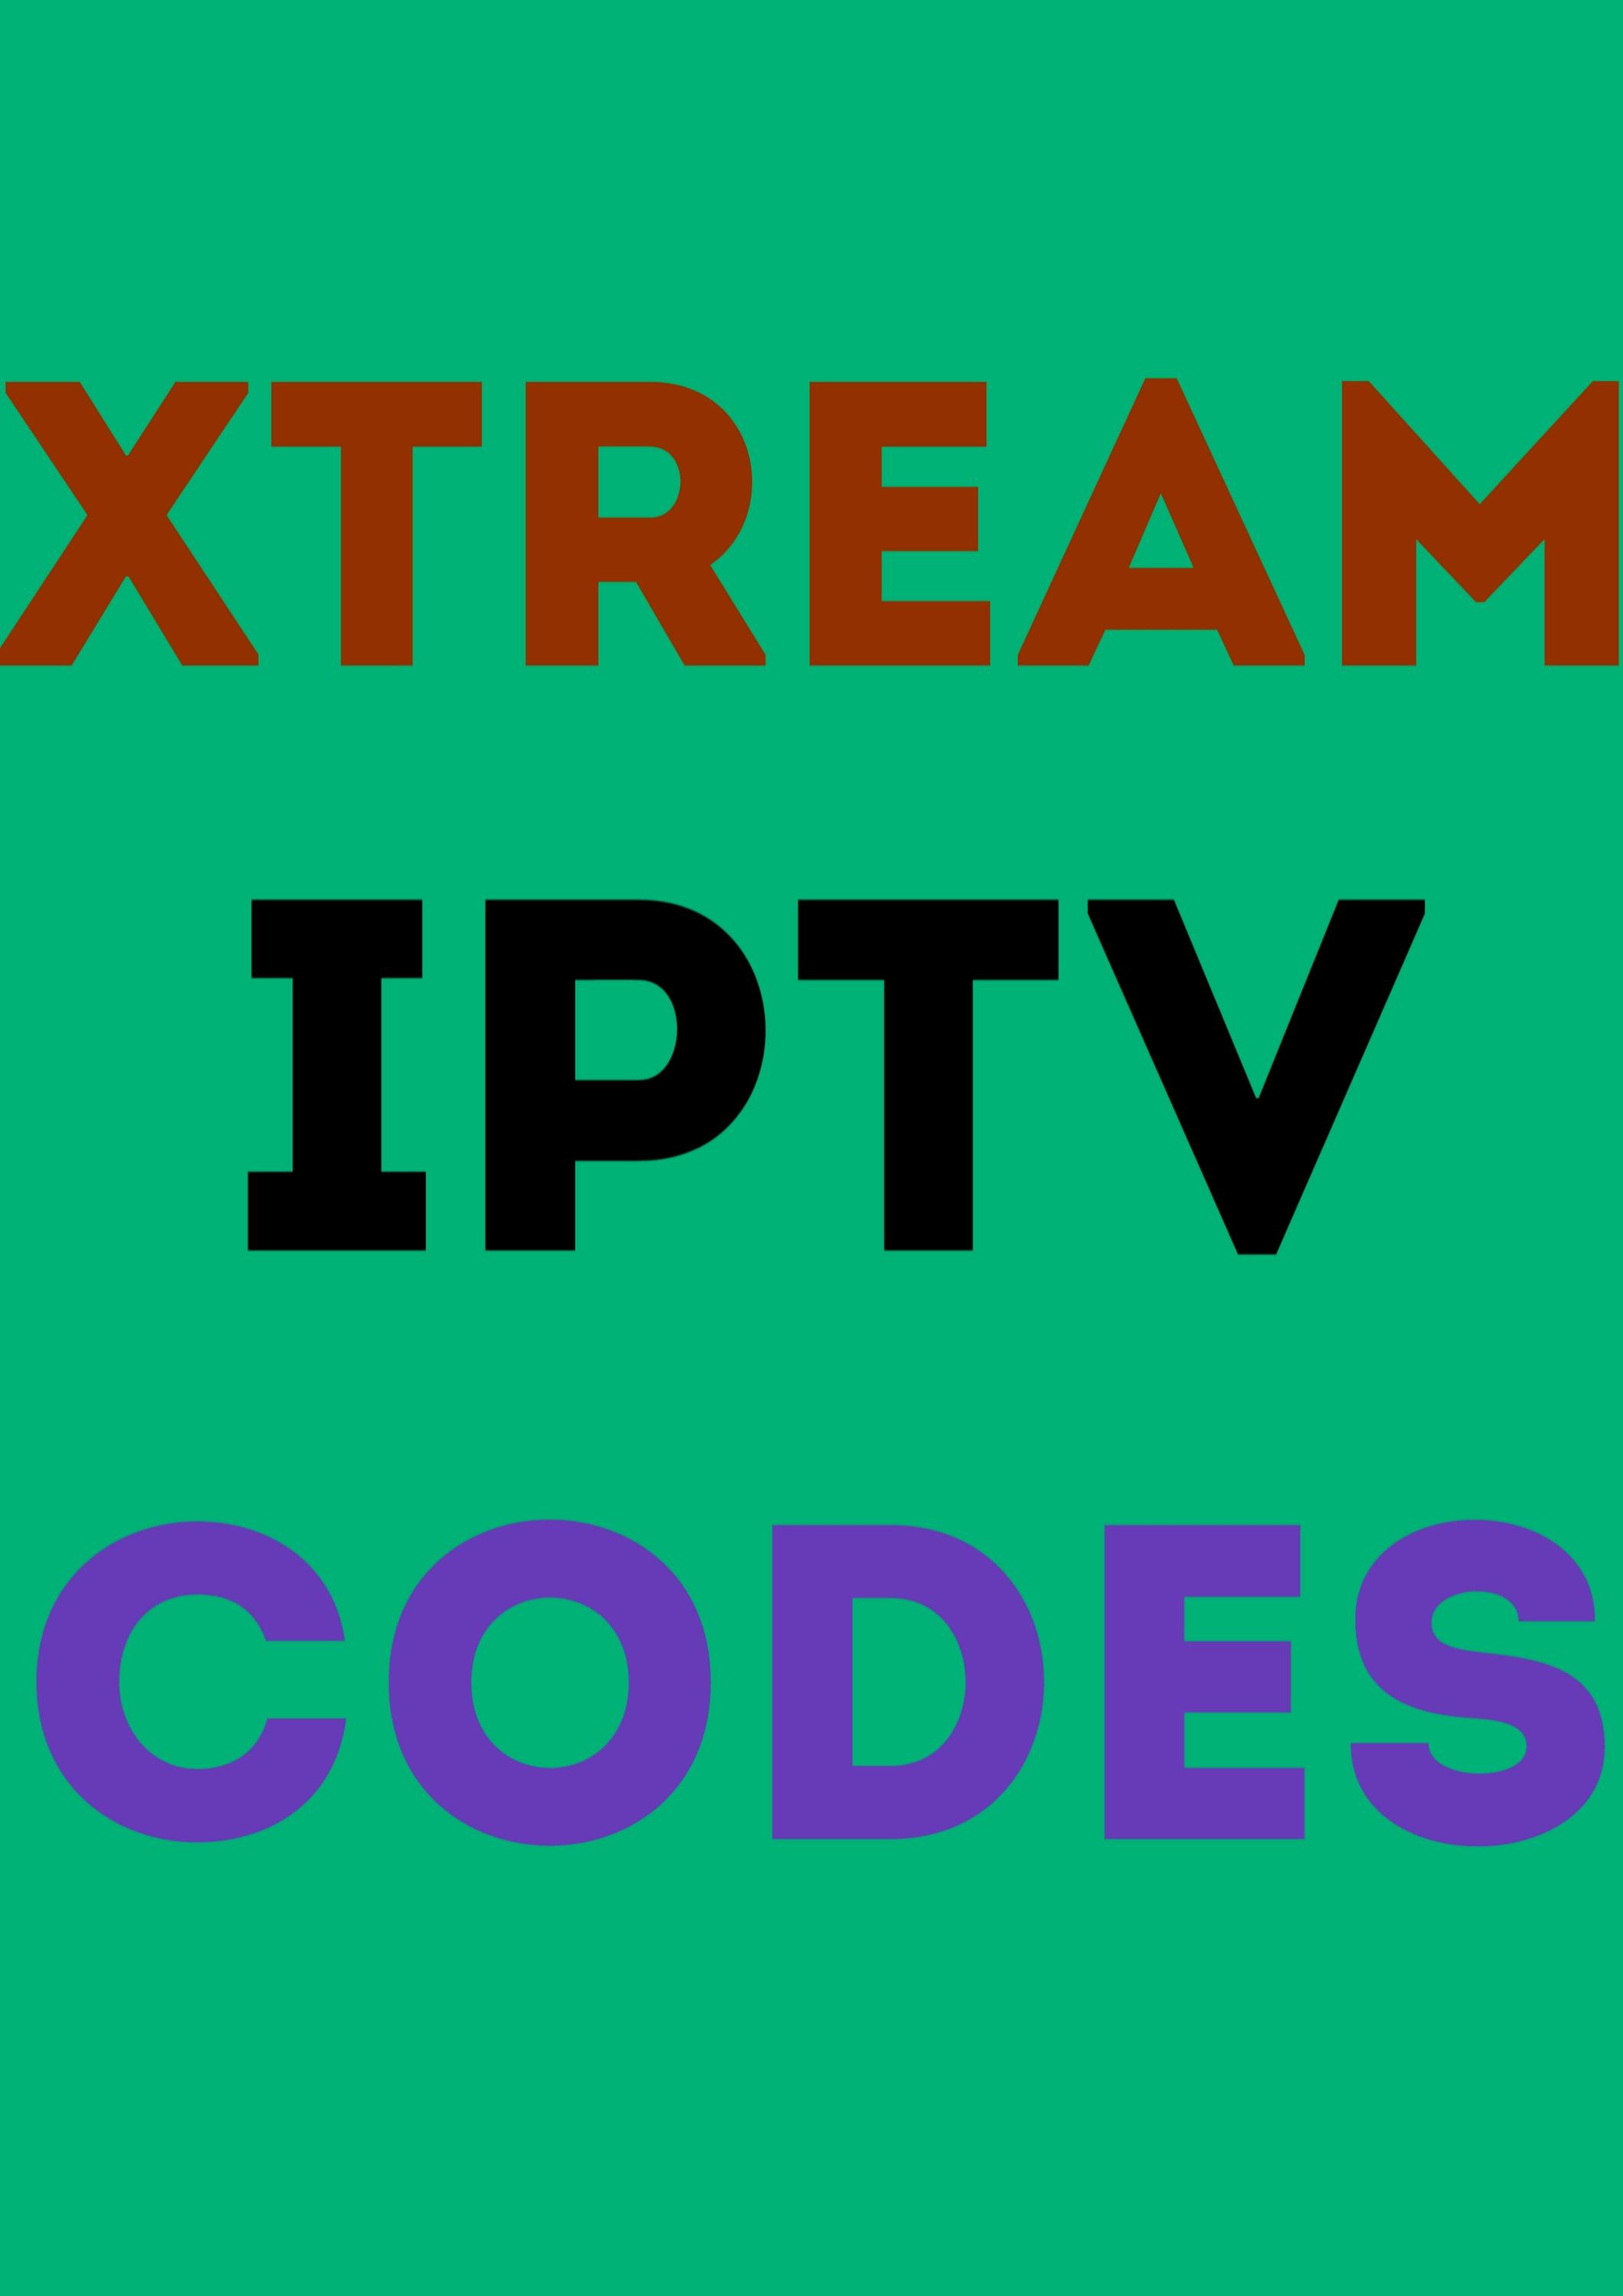 Xtream Iptv Codes 